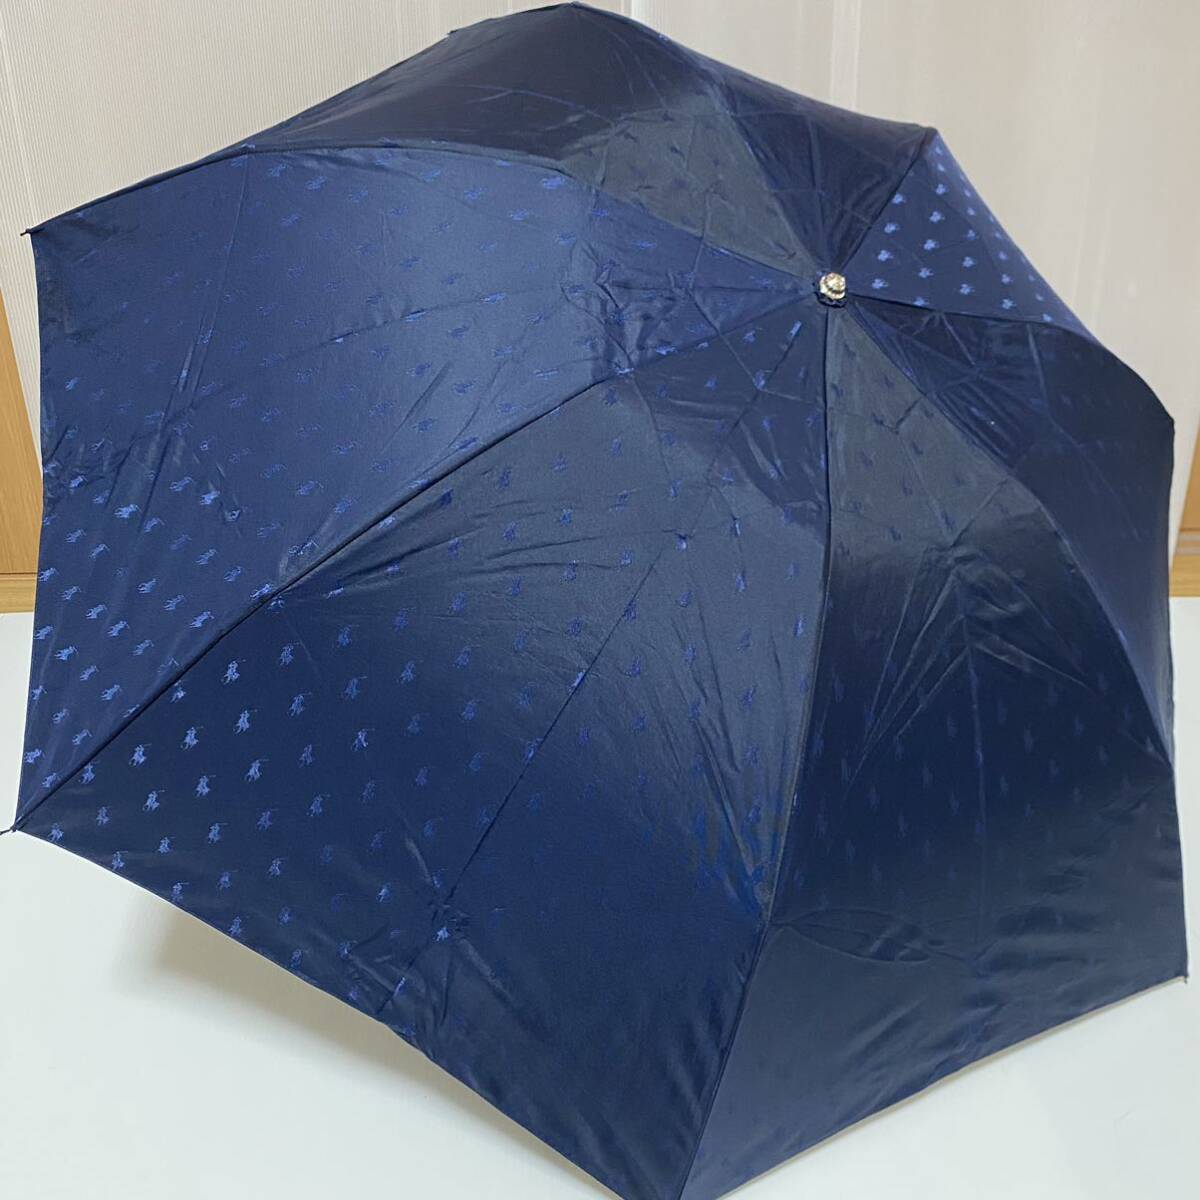 う240347 POLO RALPH LAUREN ポロ ラルフローレン 折りたたみ傘 晴雨兼用 雨傘 日傘の画像1